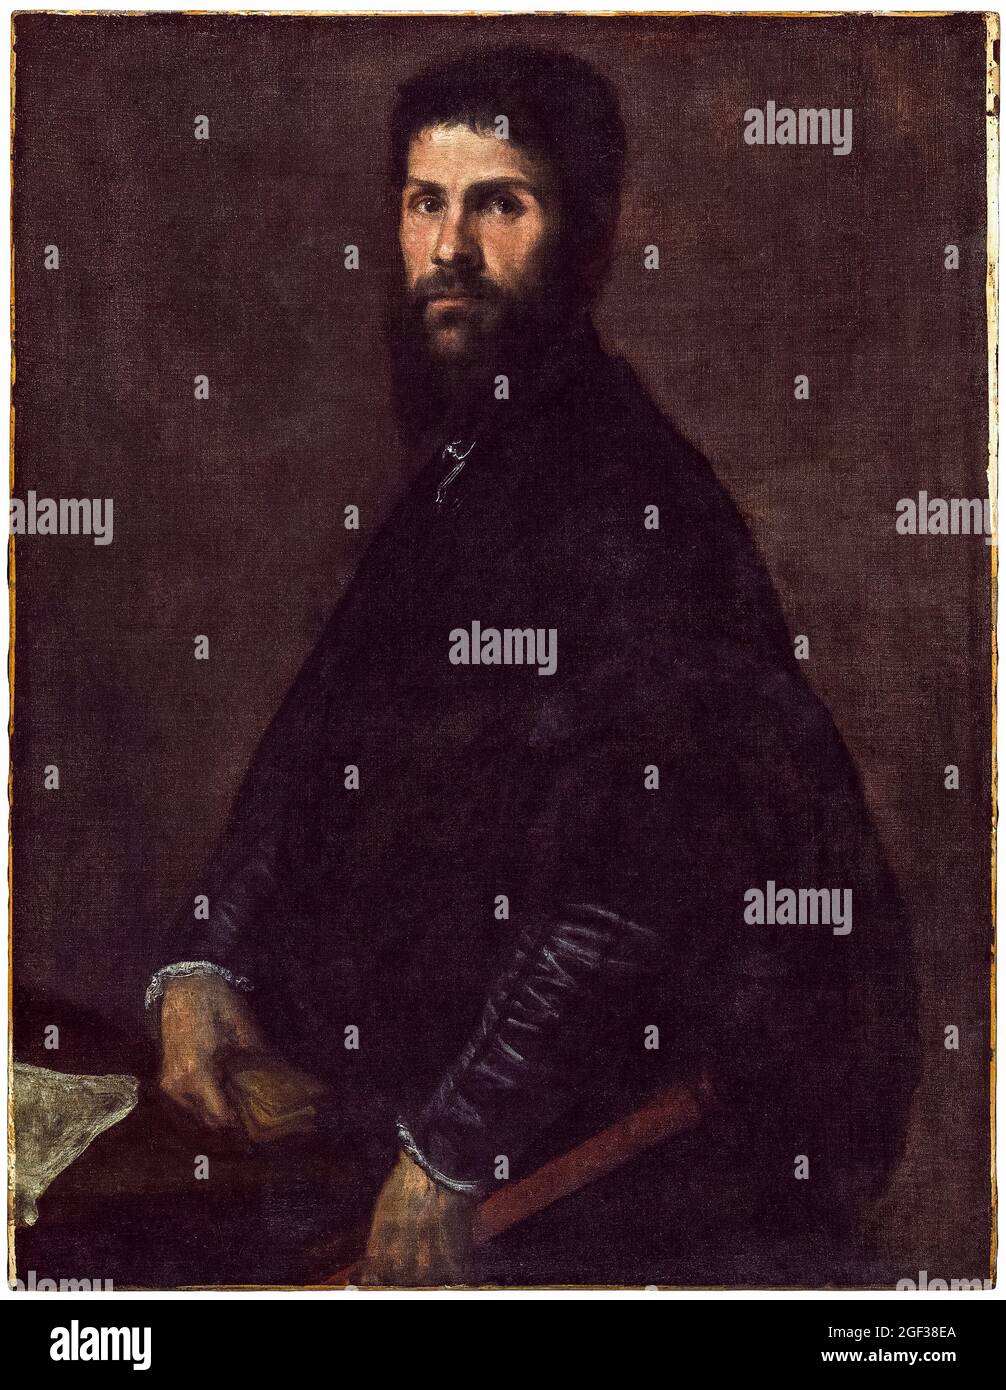 Titien, Tiziano Vecellio, Homme tenant une flûte, portrait, 1560-1565 Banque D'Images